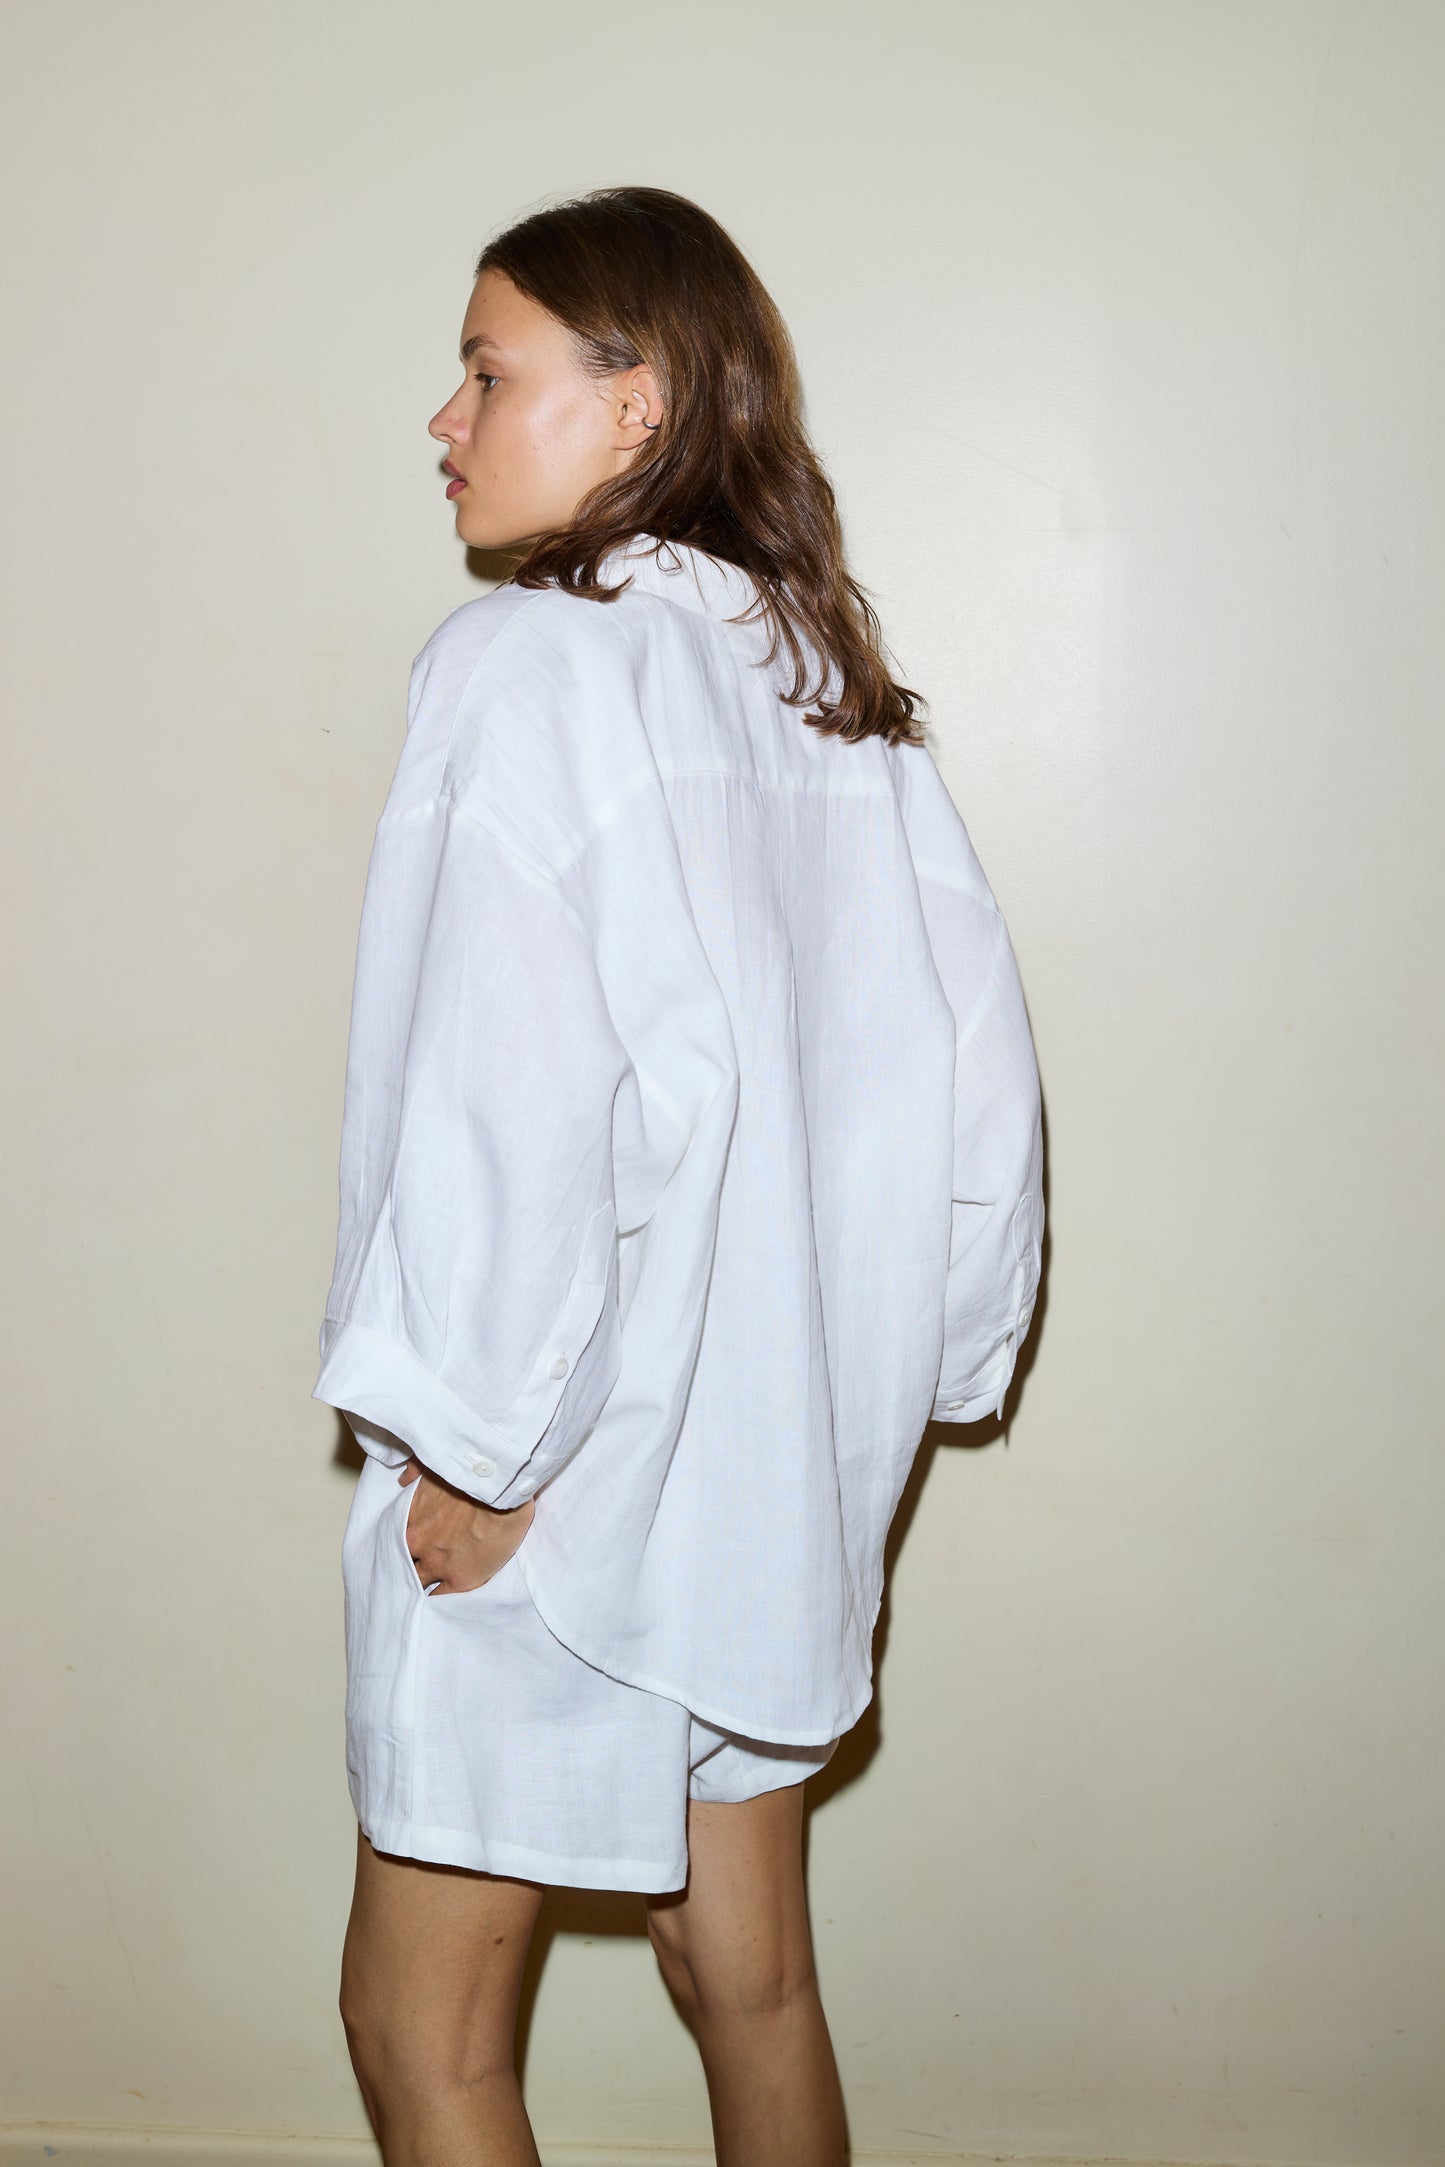 Female model wearing the 03 set - white by Deiji Studios against plain background